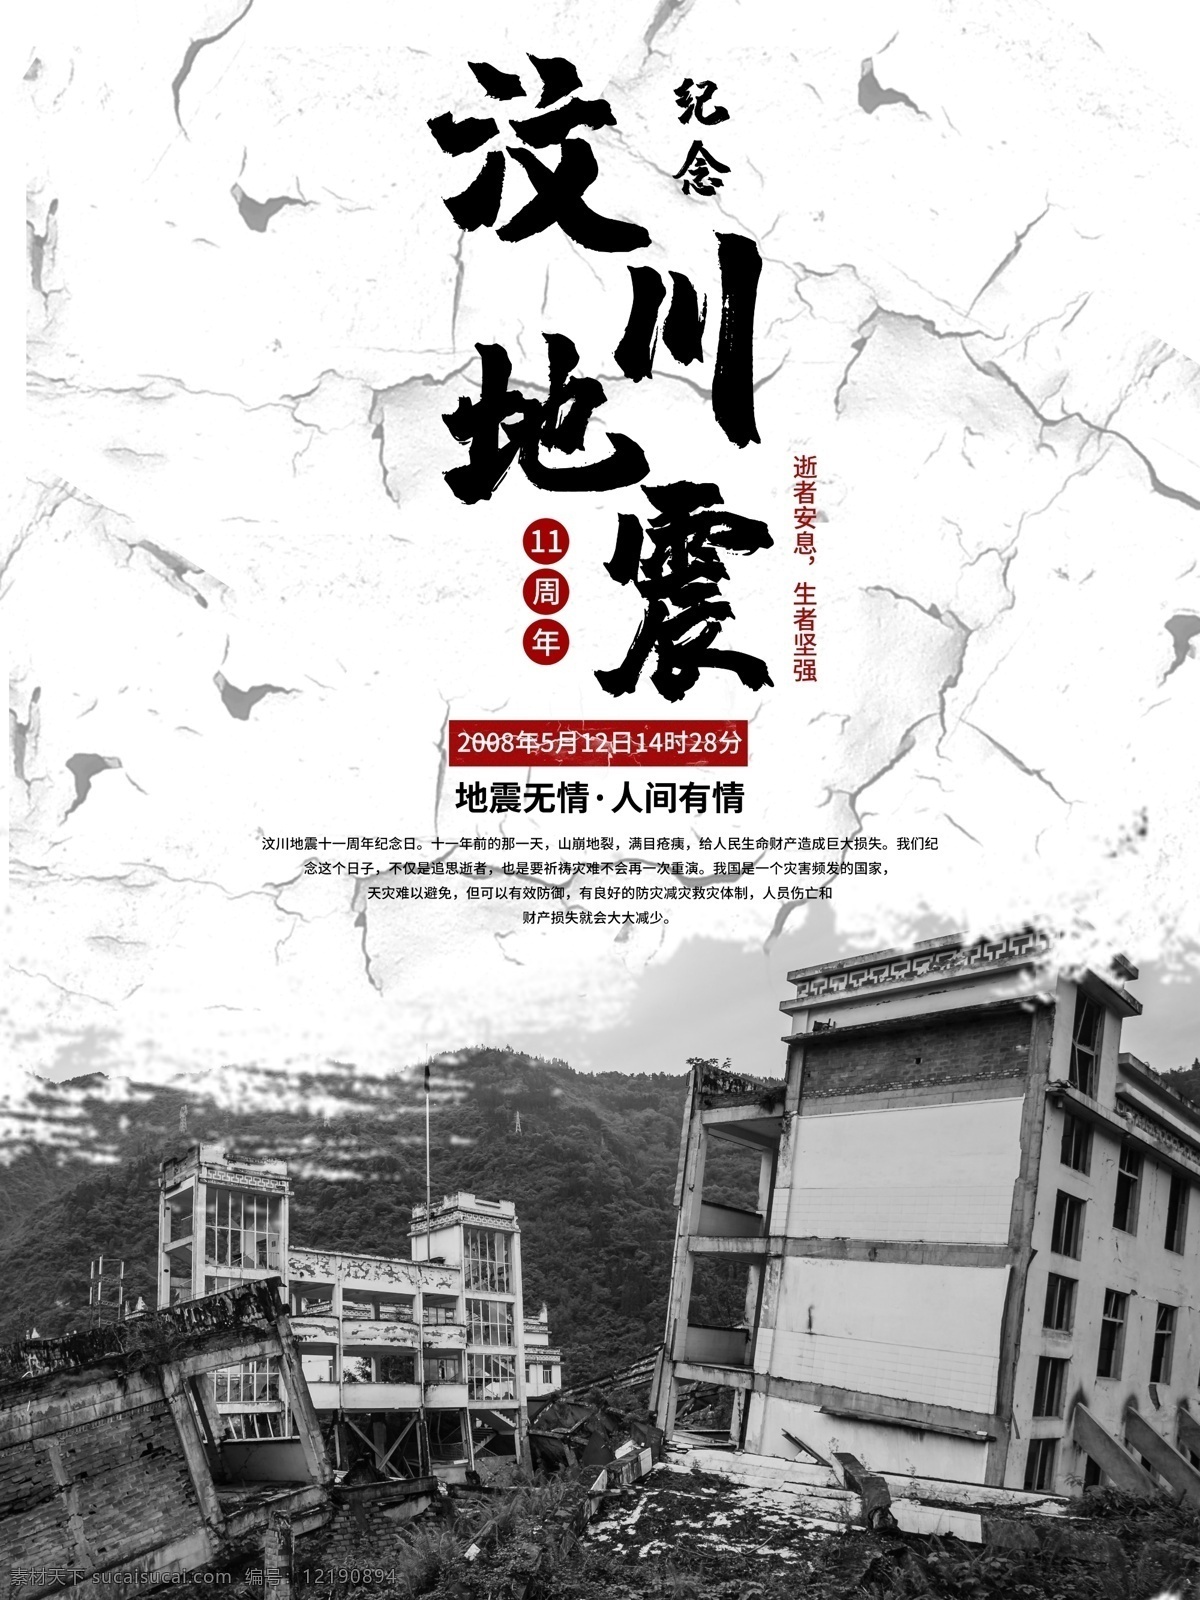 黑白 纪念 汶川 地震 周年 海报 11周年 裂纹